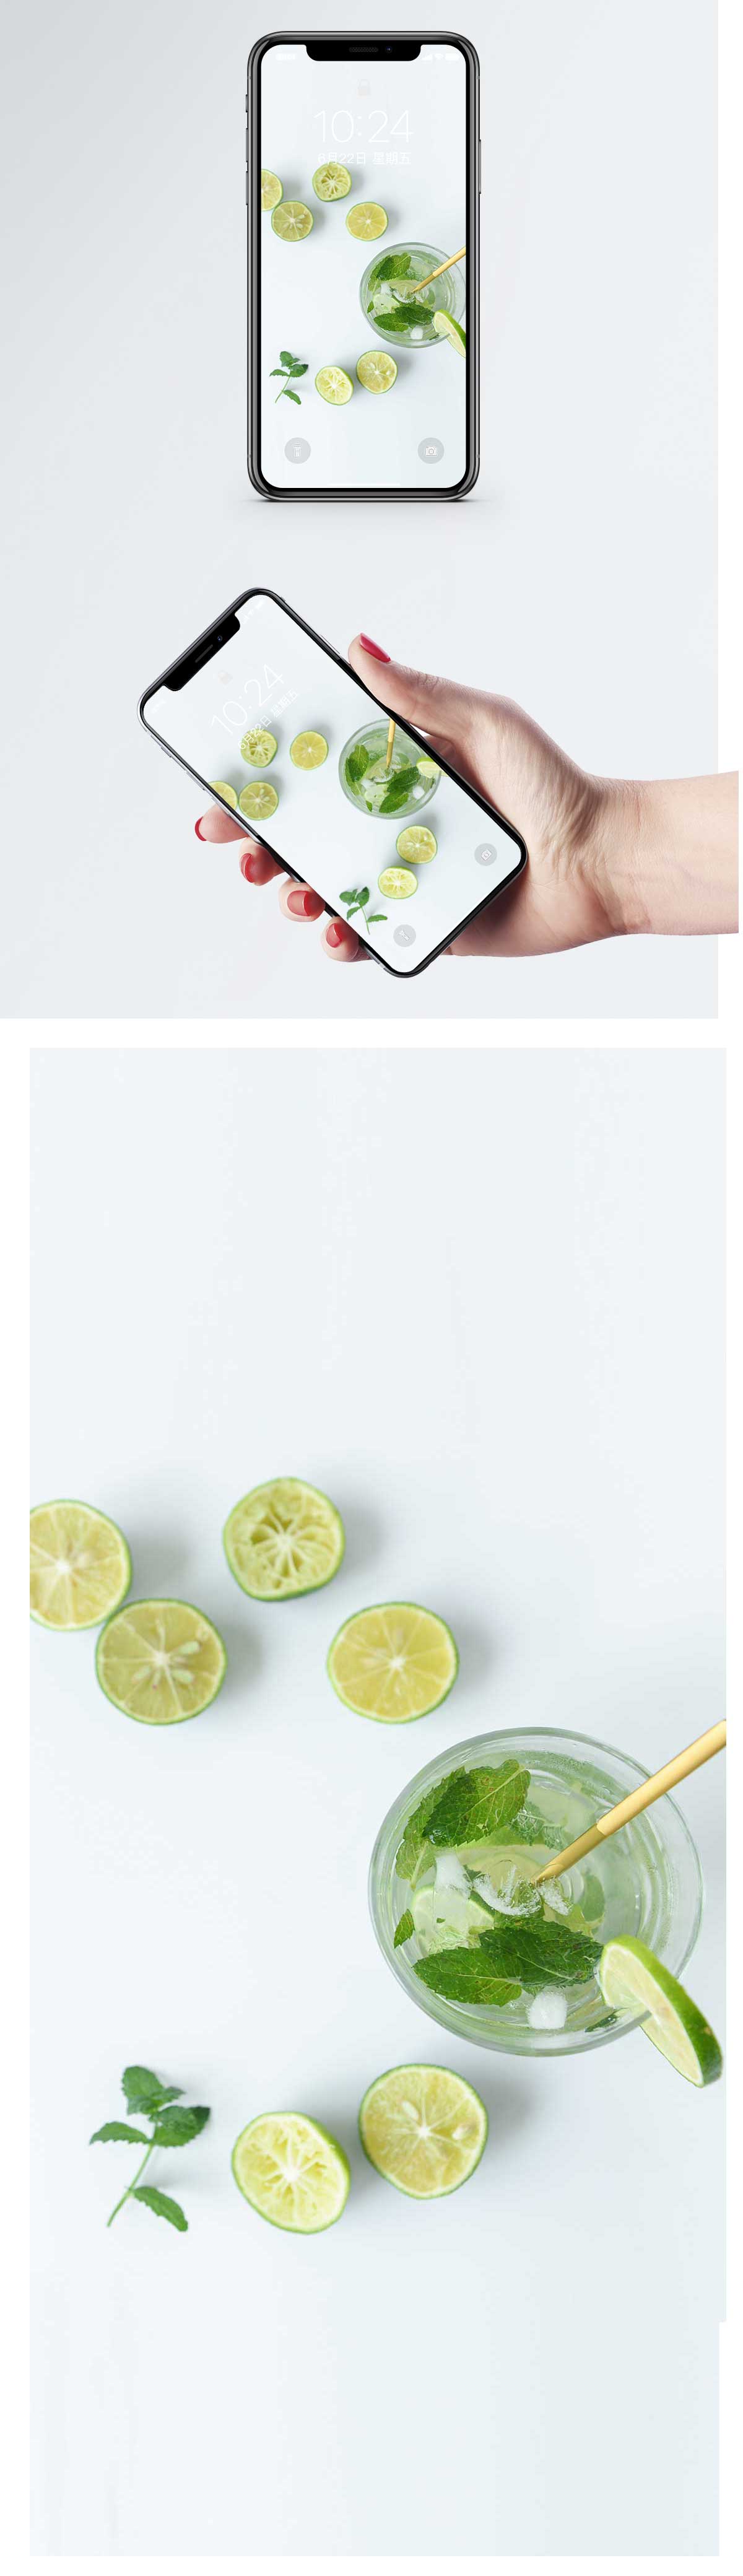 Lemonade Cell Phone Wallpaper - Обои Для Телефона Фрукты , HD Wallpaper & Backgrounds